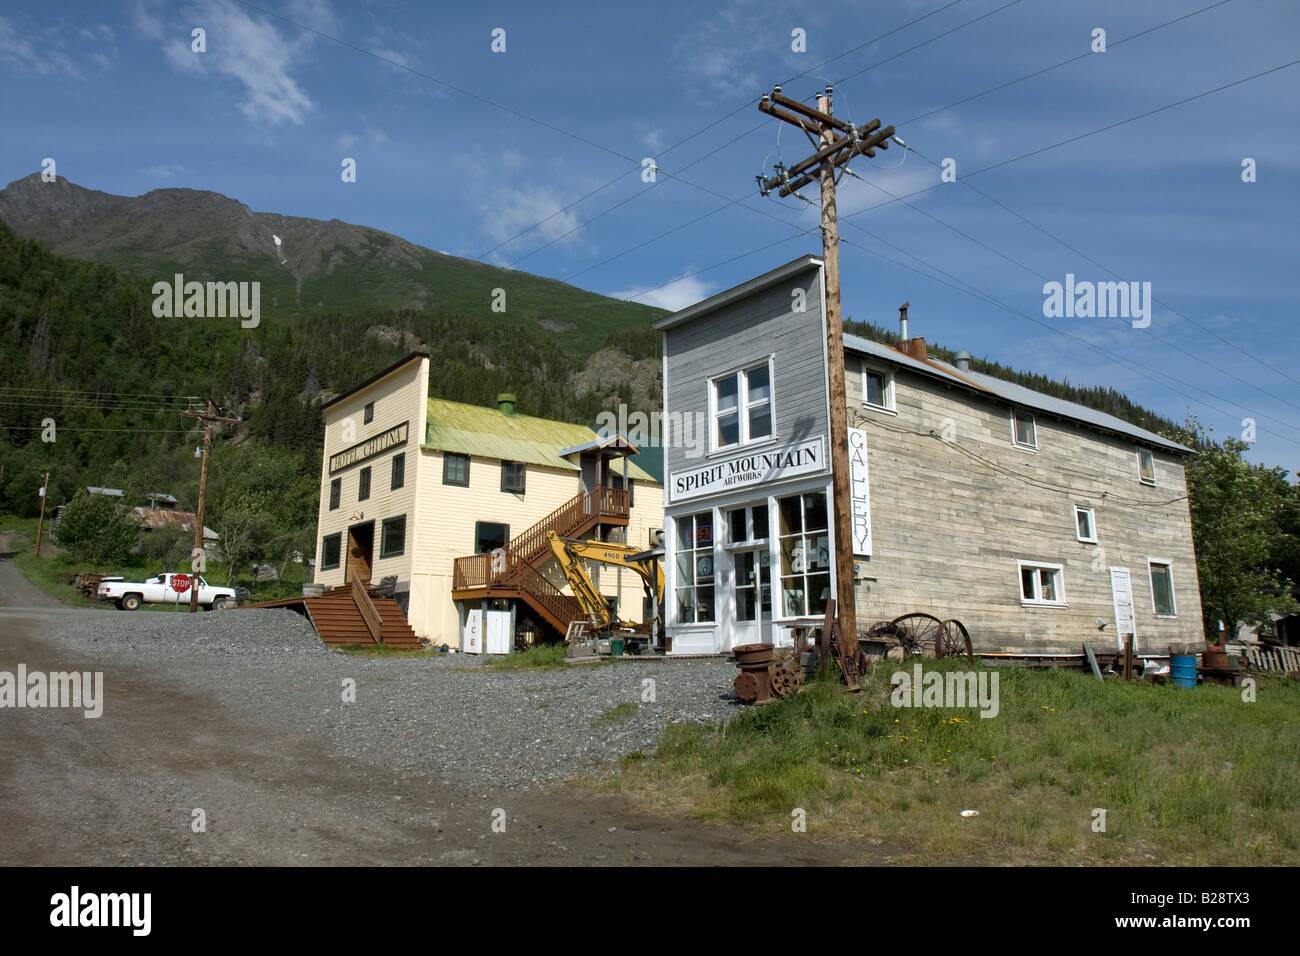 Hotel Chitina, and shop front, Chitina, Alaska. Stock Photo